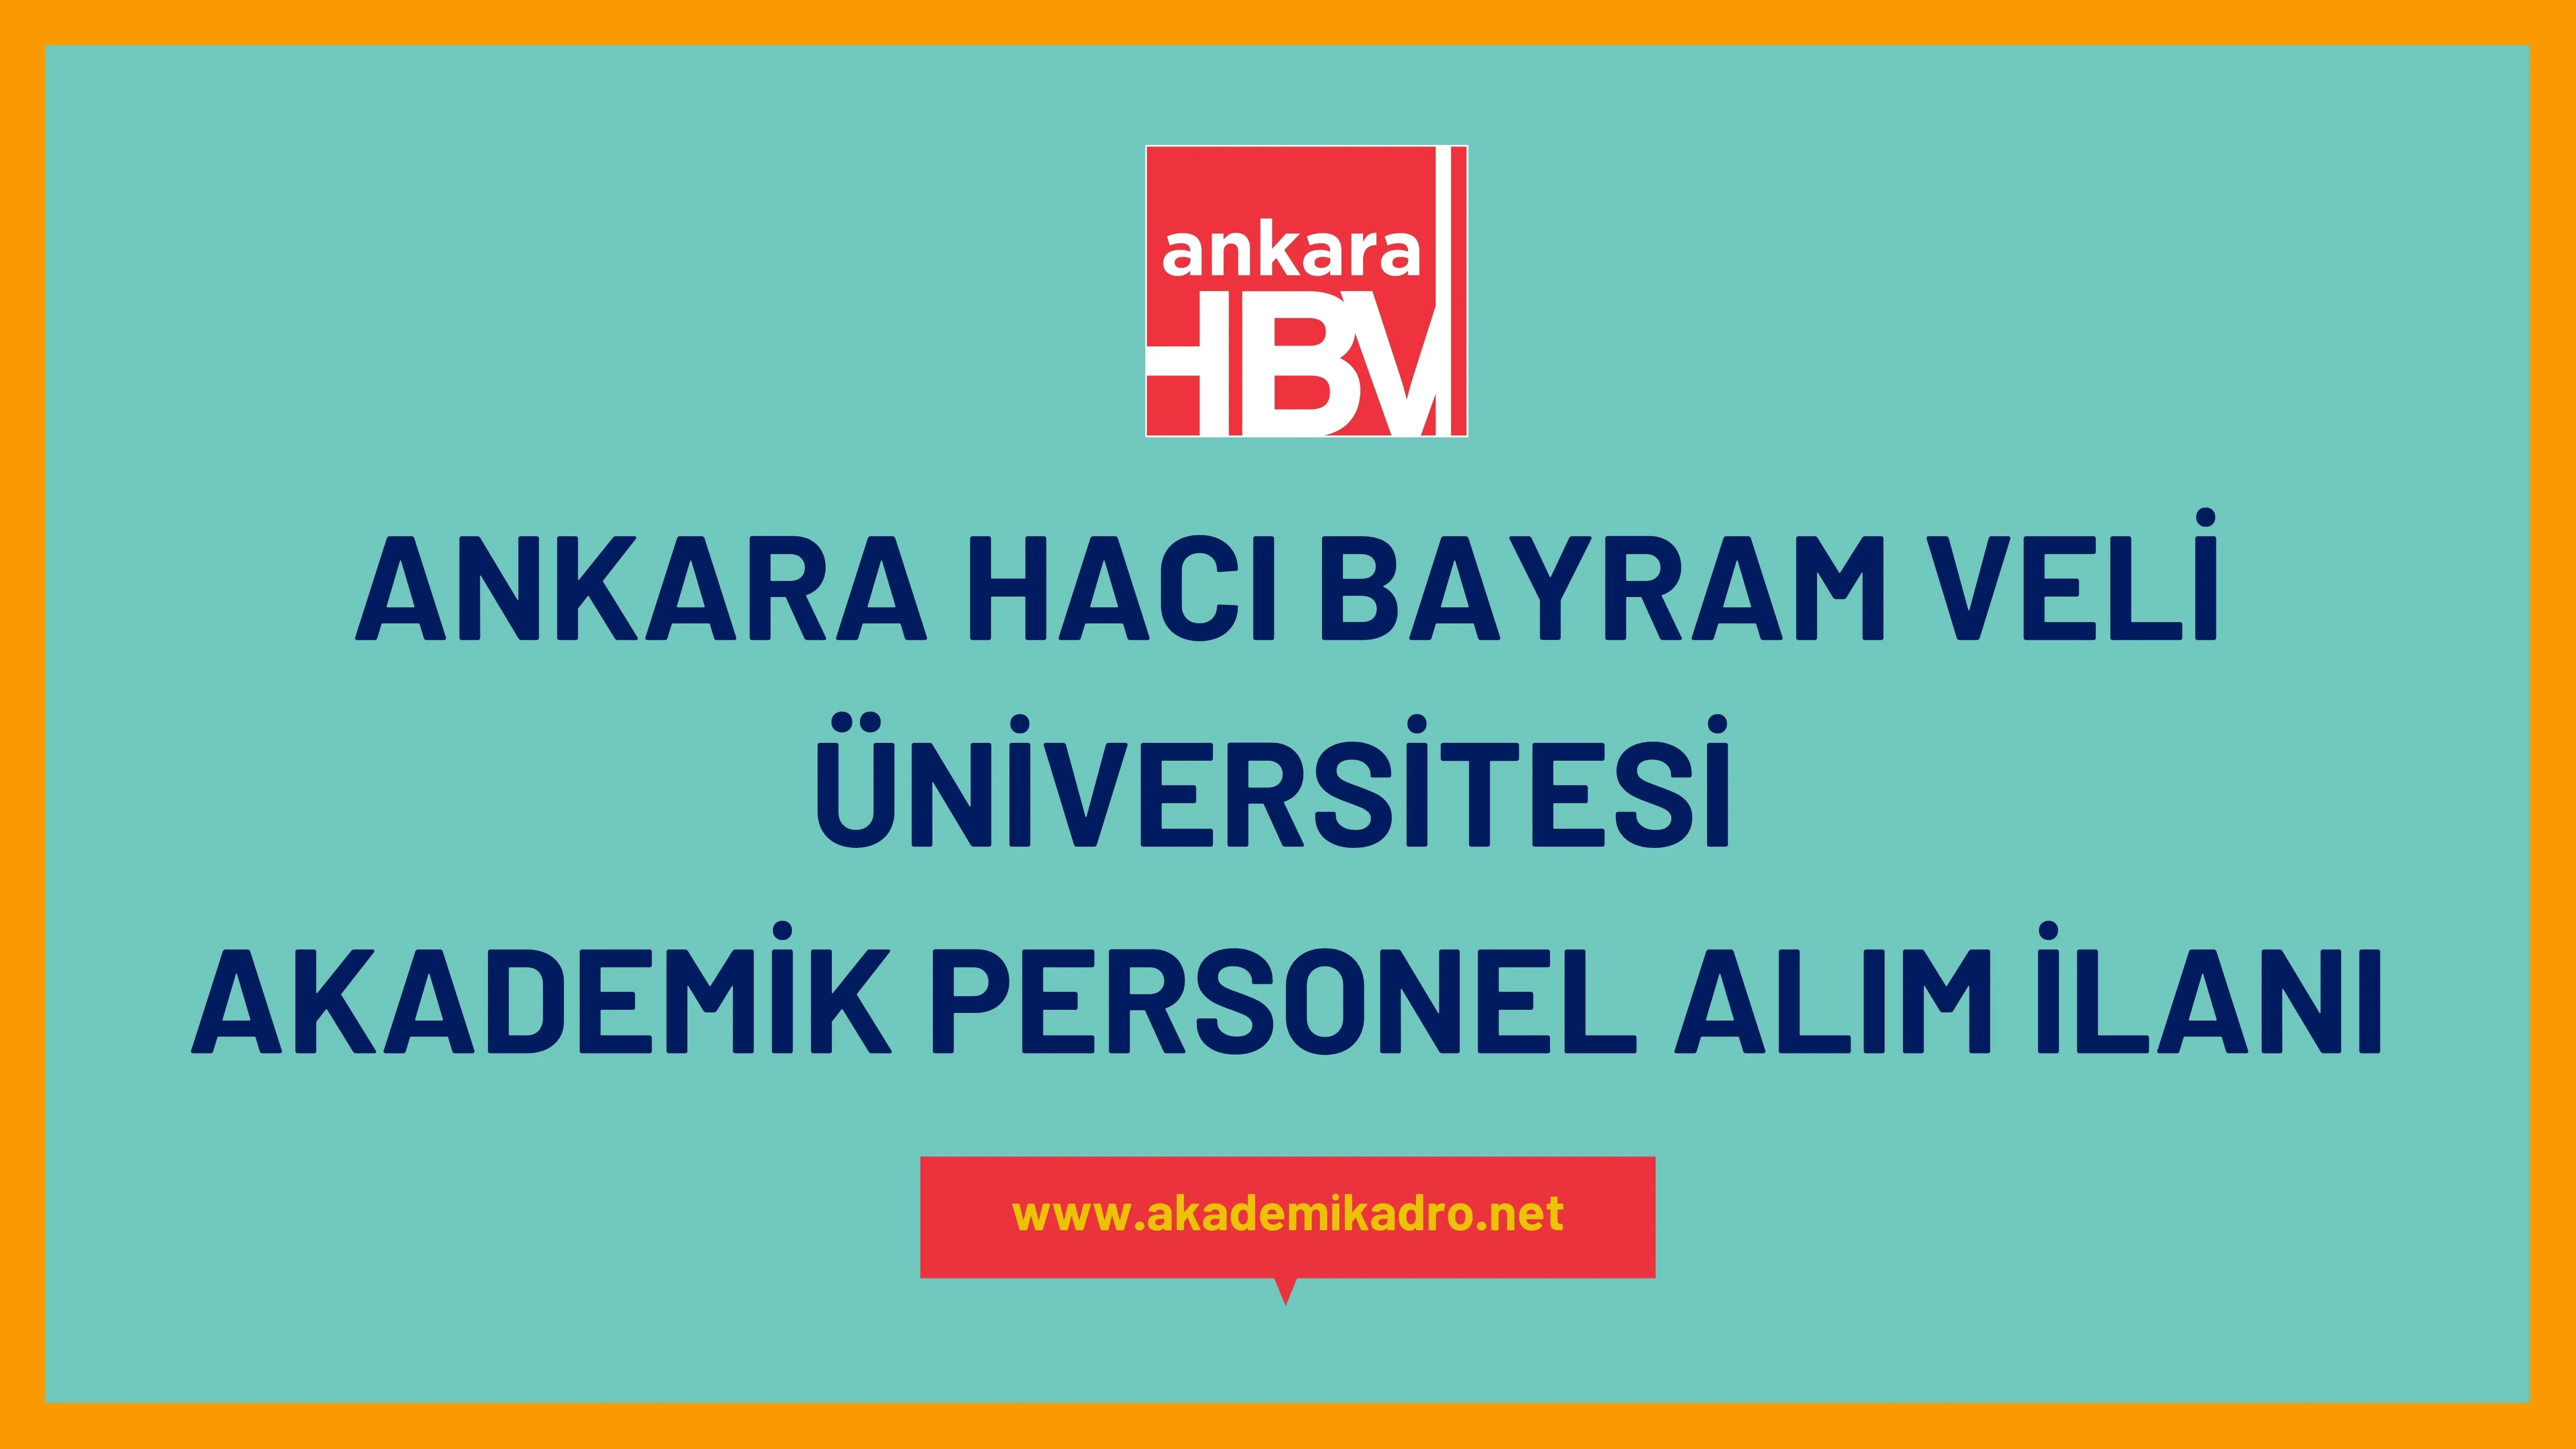 Ankara Hacı Bayram Veli Üniversitesi birçok alandan 56 akademik personel alacak.